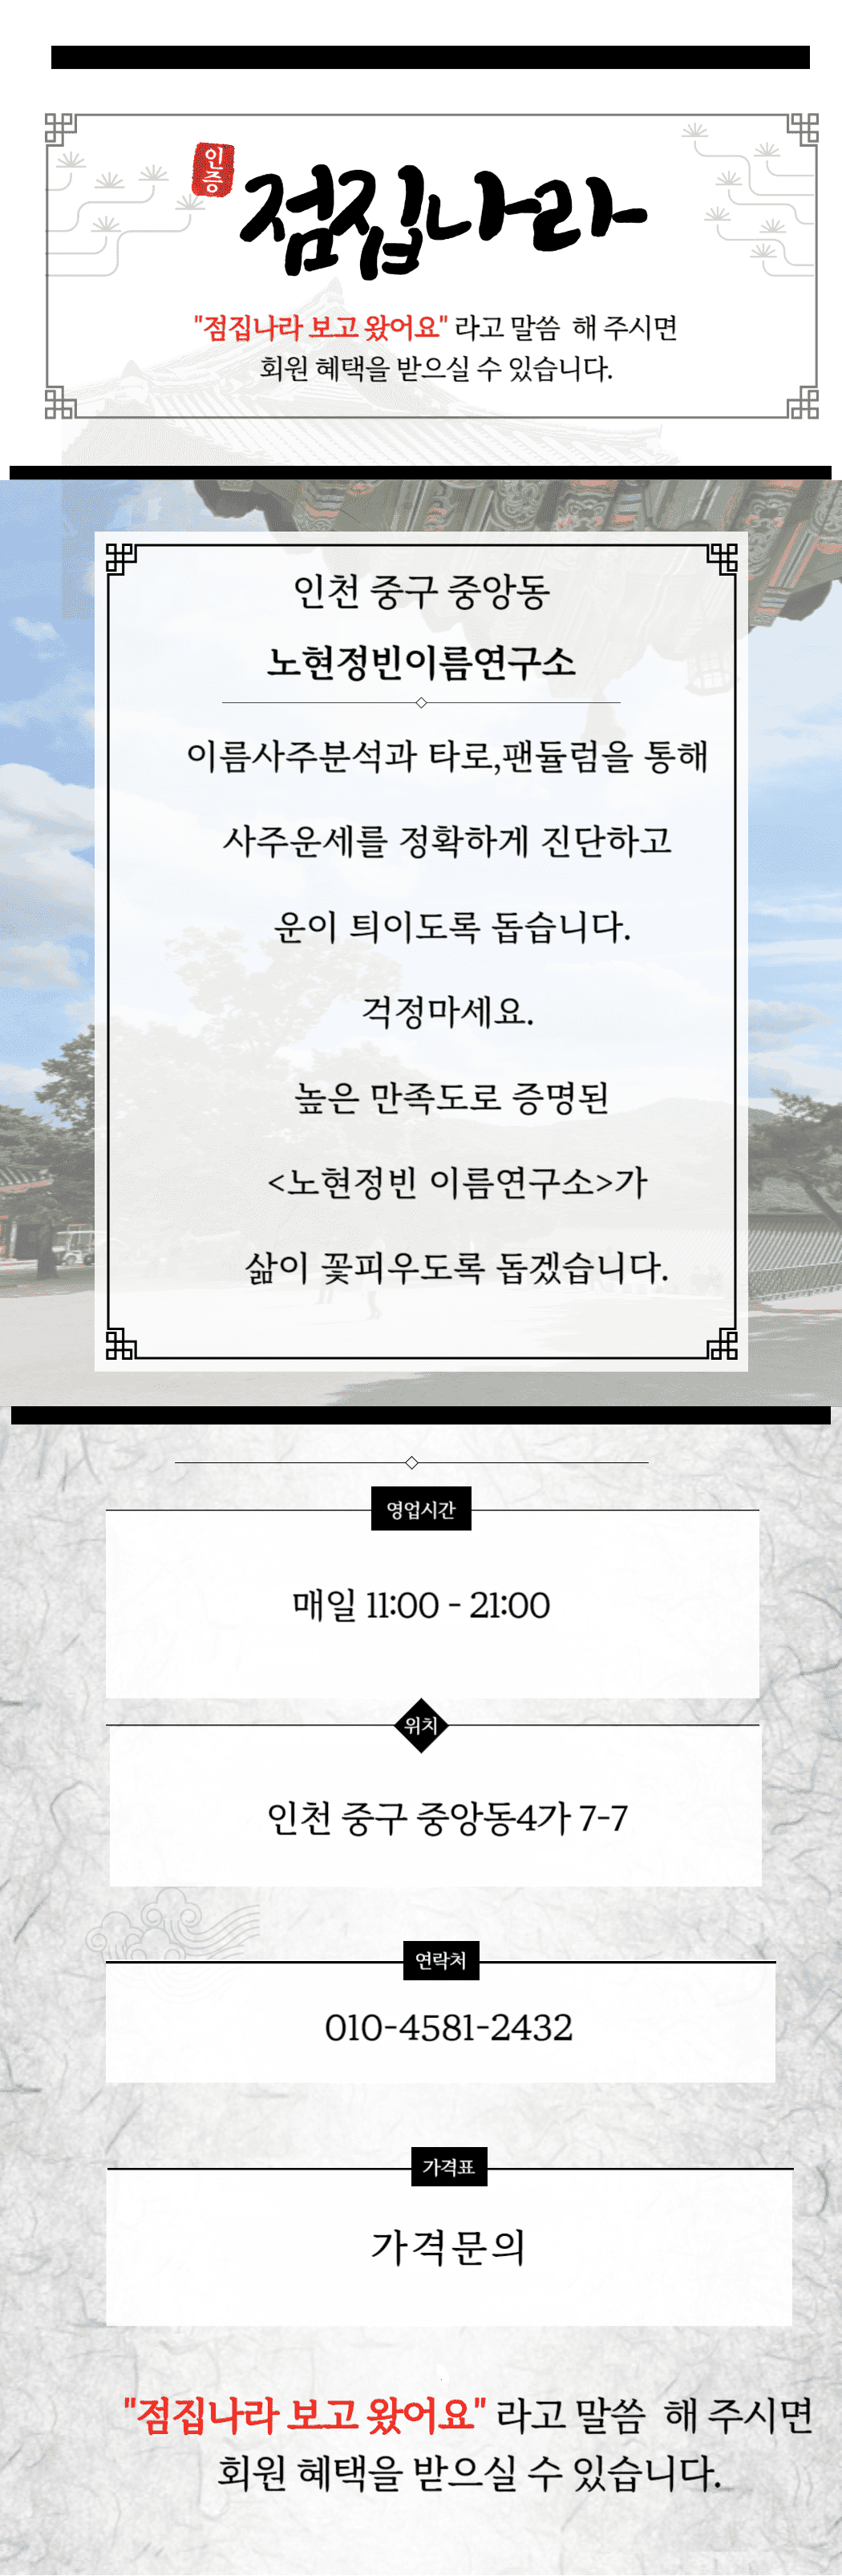 인천노현정빈이름연구소